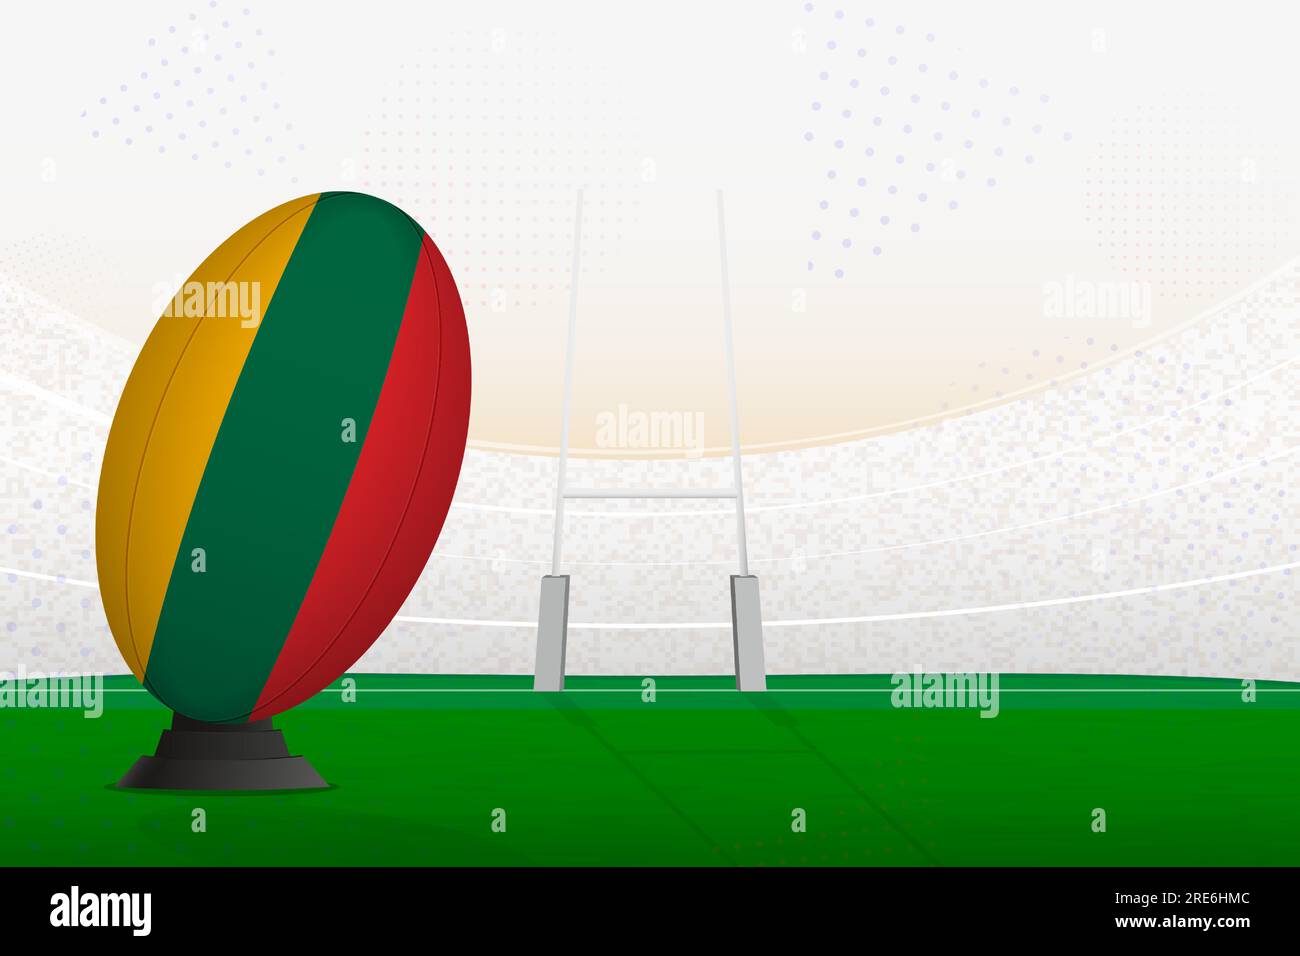 Pallone di rugby della nazionale lituana su stadio di rugby e pali di goal, preparandosi per un rigore o un calcio di punizione. Illustrazione vettoriale. Illustrazione Vettoriale